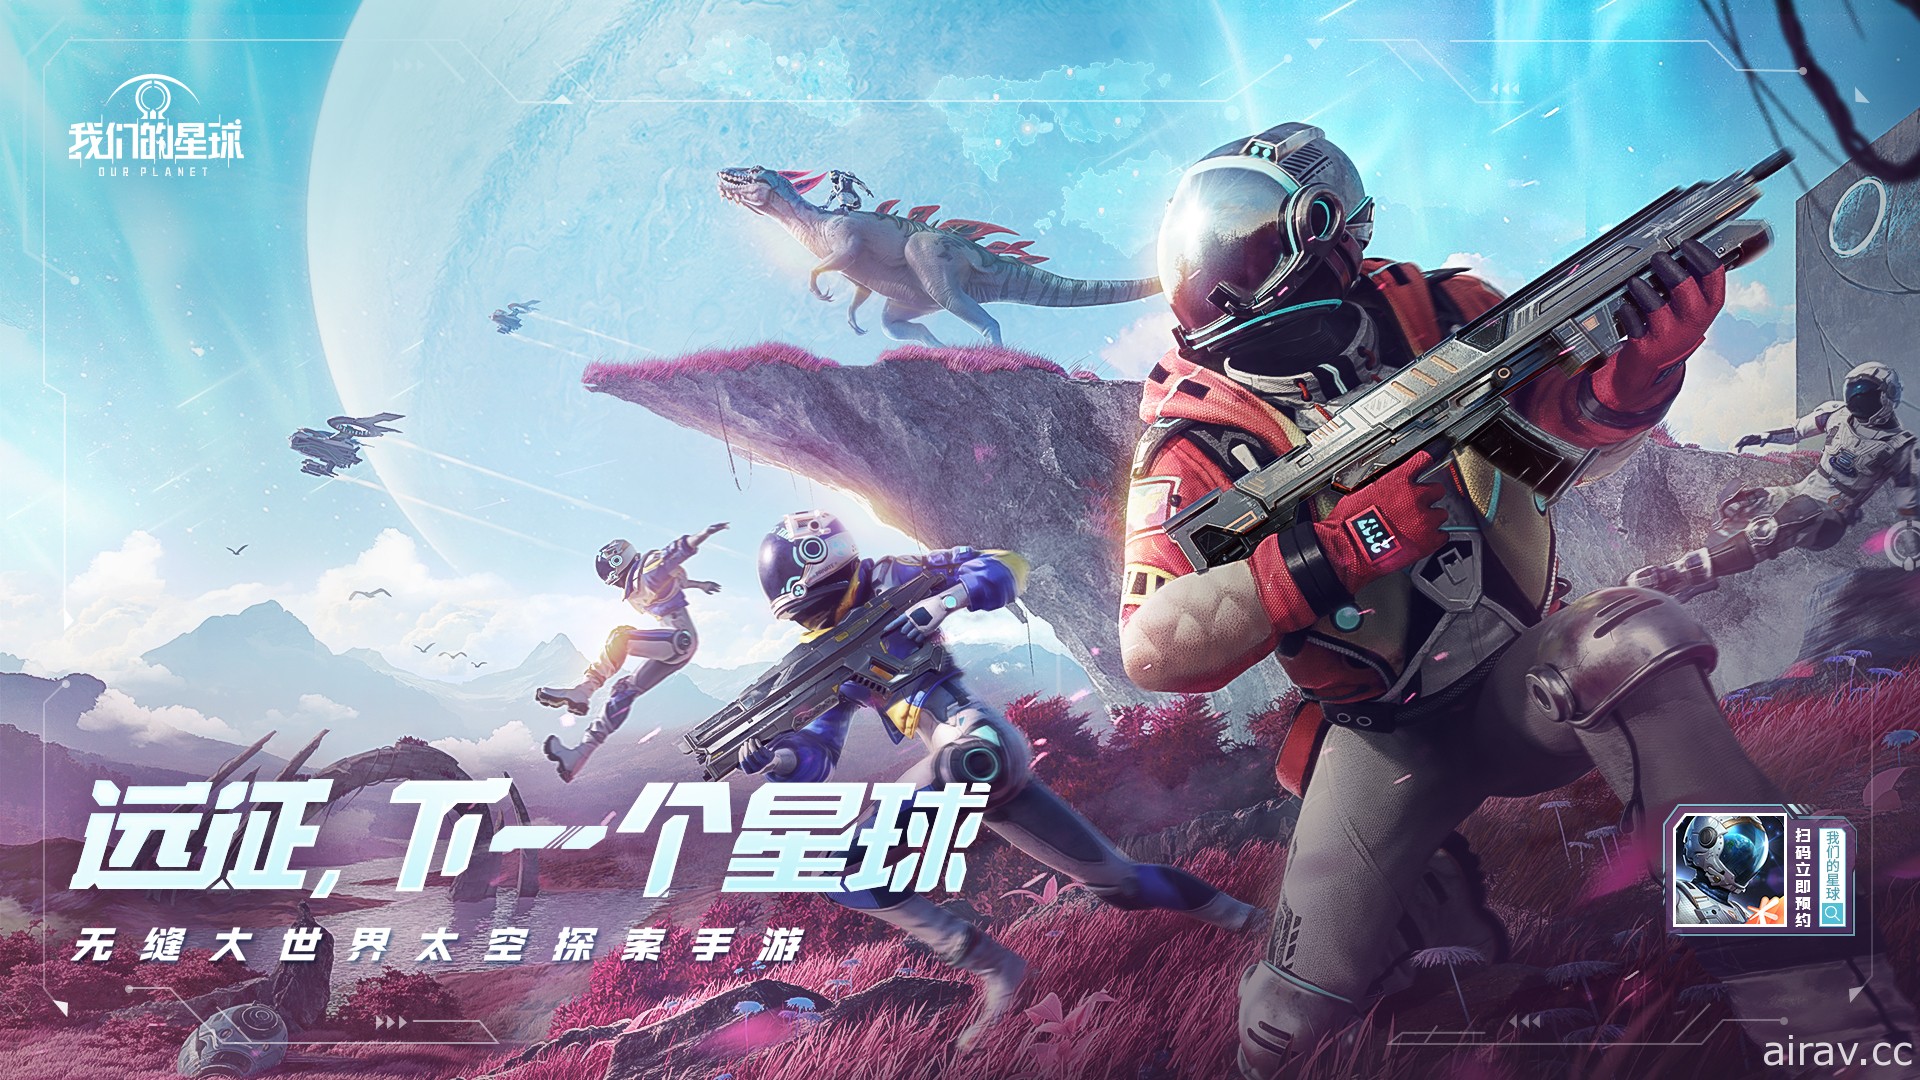 無縫大世界太空探索新作《我們的星球》釋出玩法介紹 於中國開放事前登錄